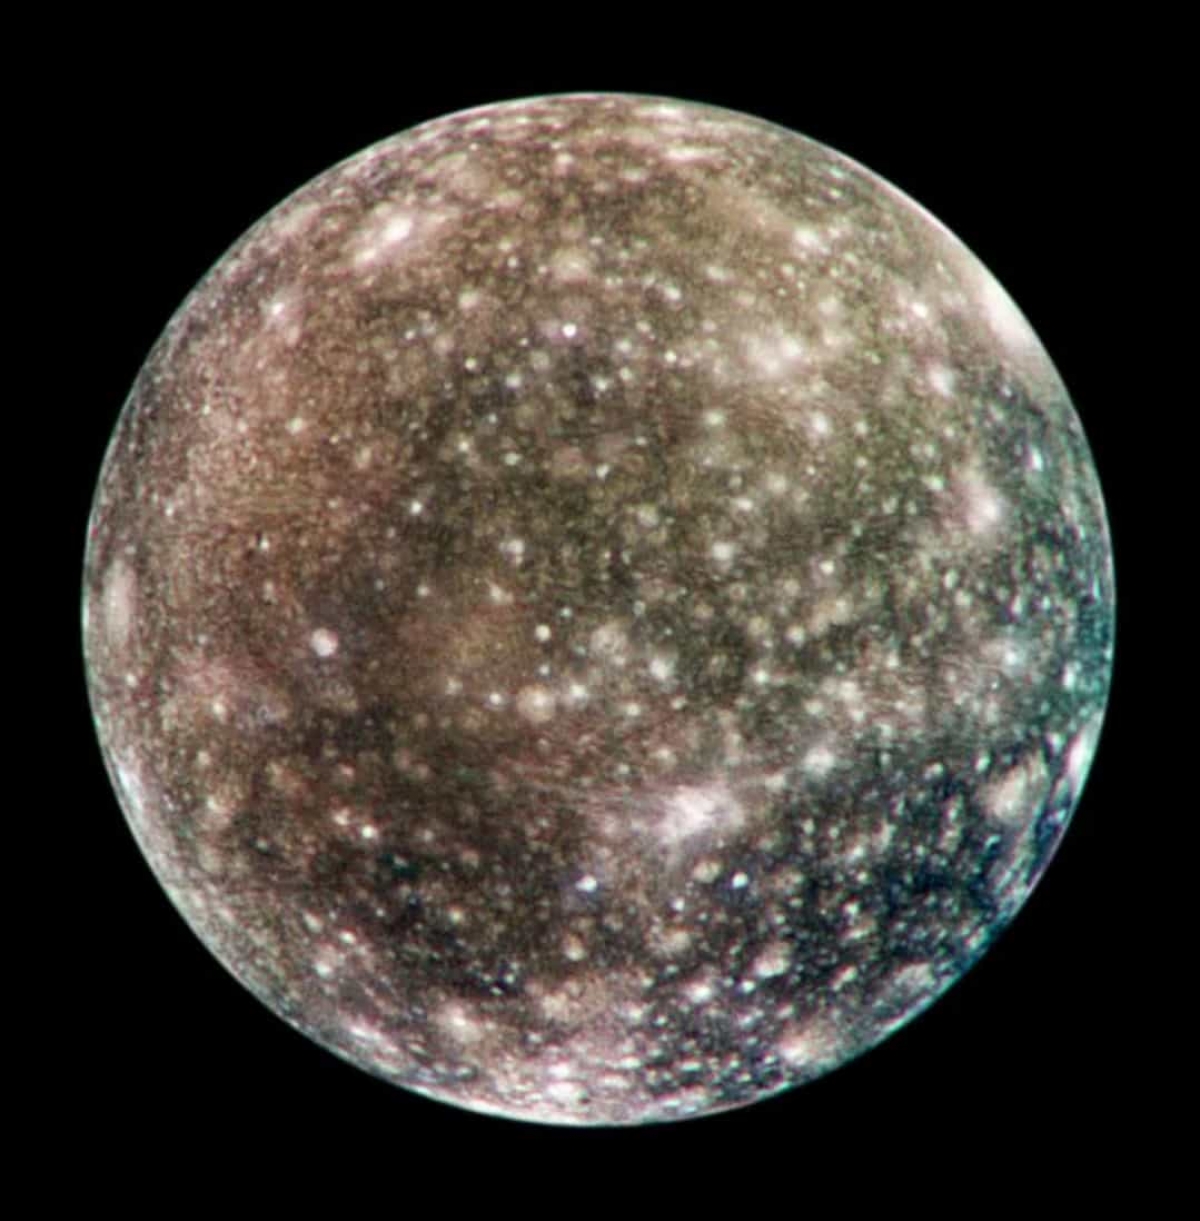 Callisto là vật thể có nhiều miệng núi lửa nhất trong hệ mặt trời. Callisto là mặt trăng lớn thứ 2 của sao Mộc, sau Ganymede.